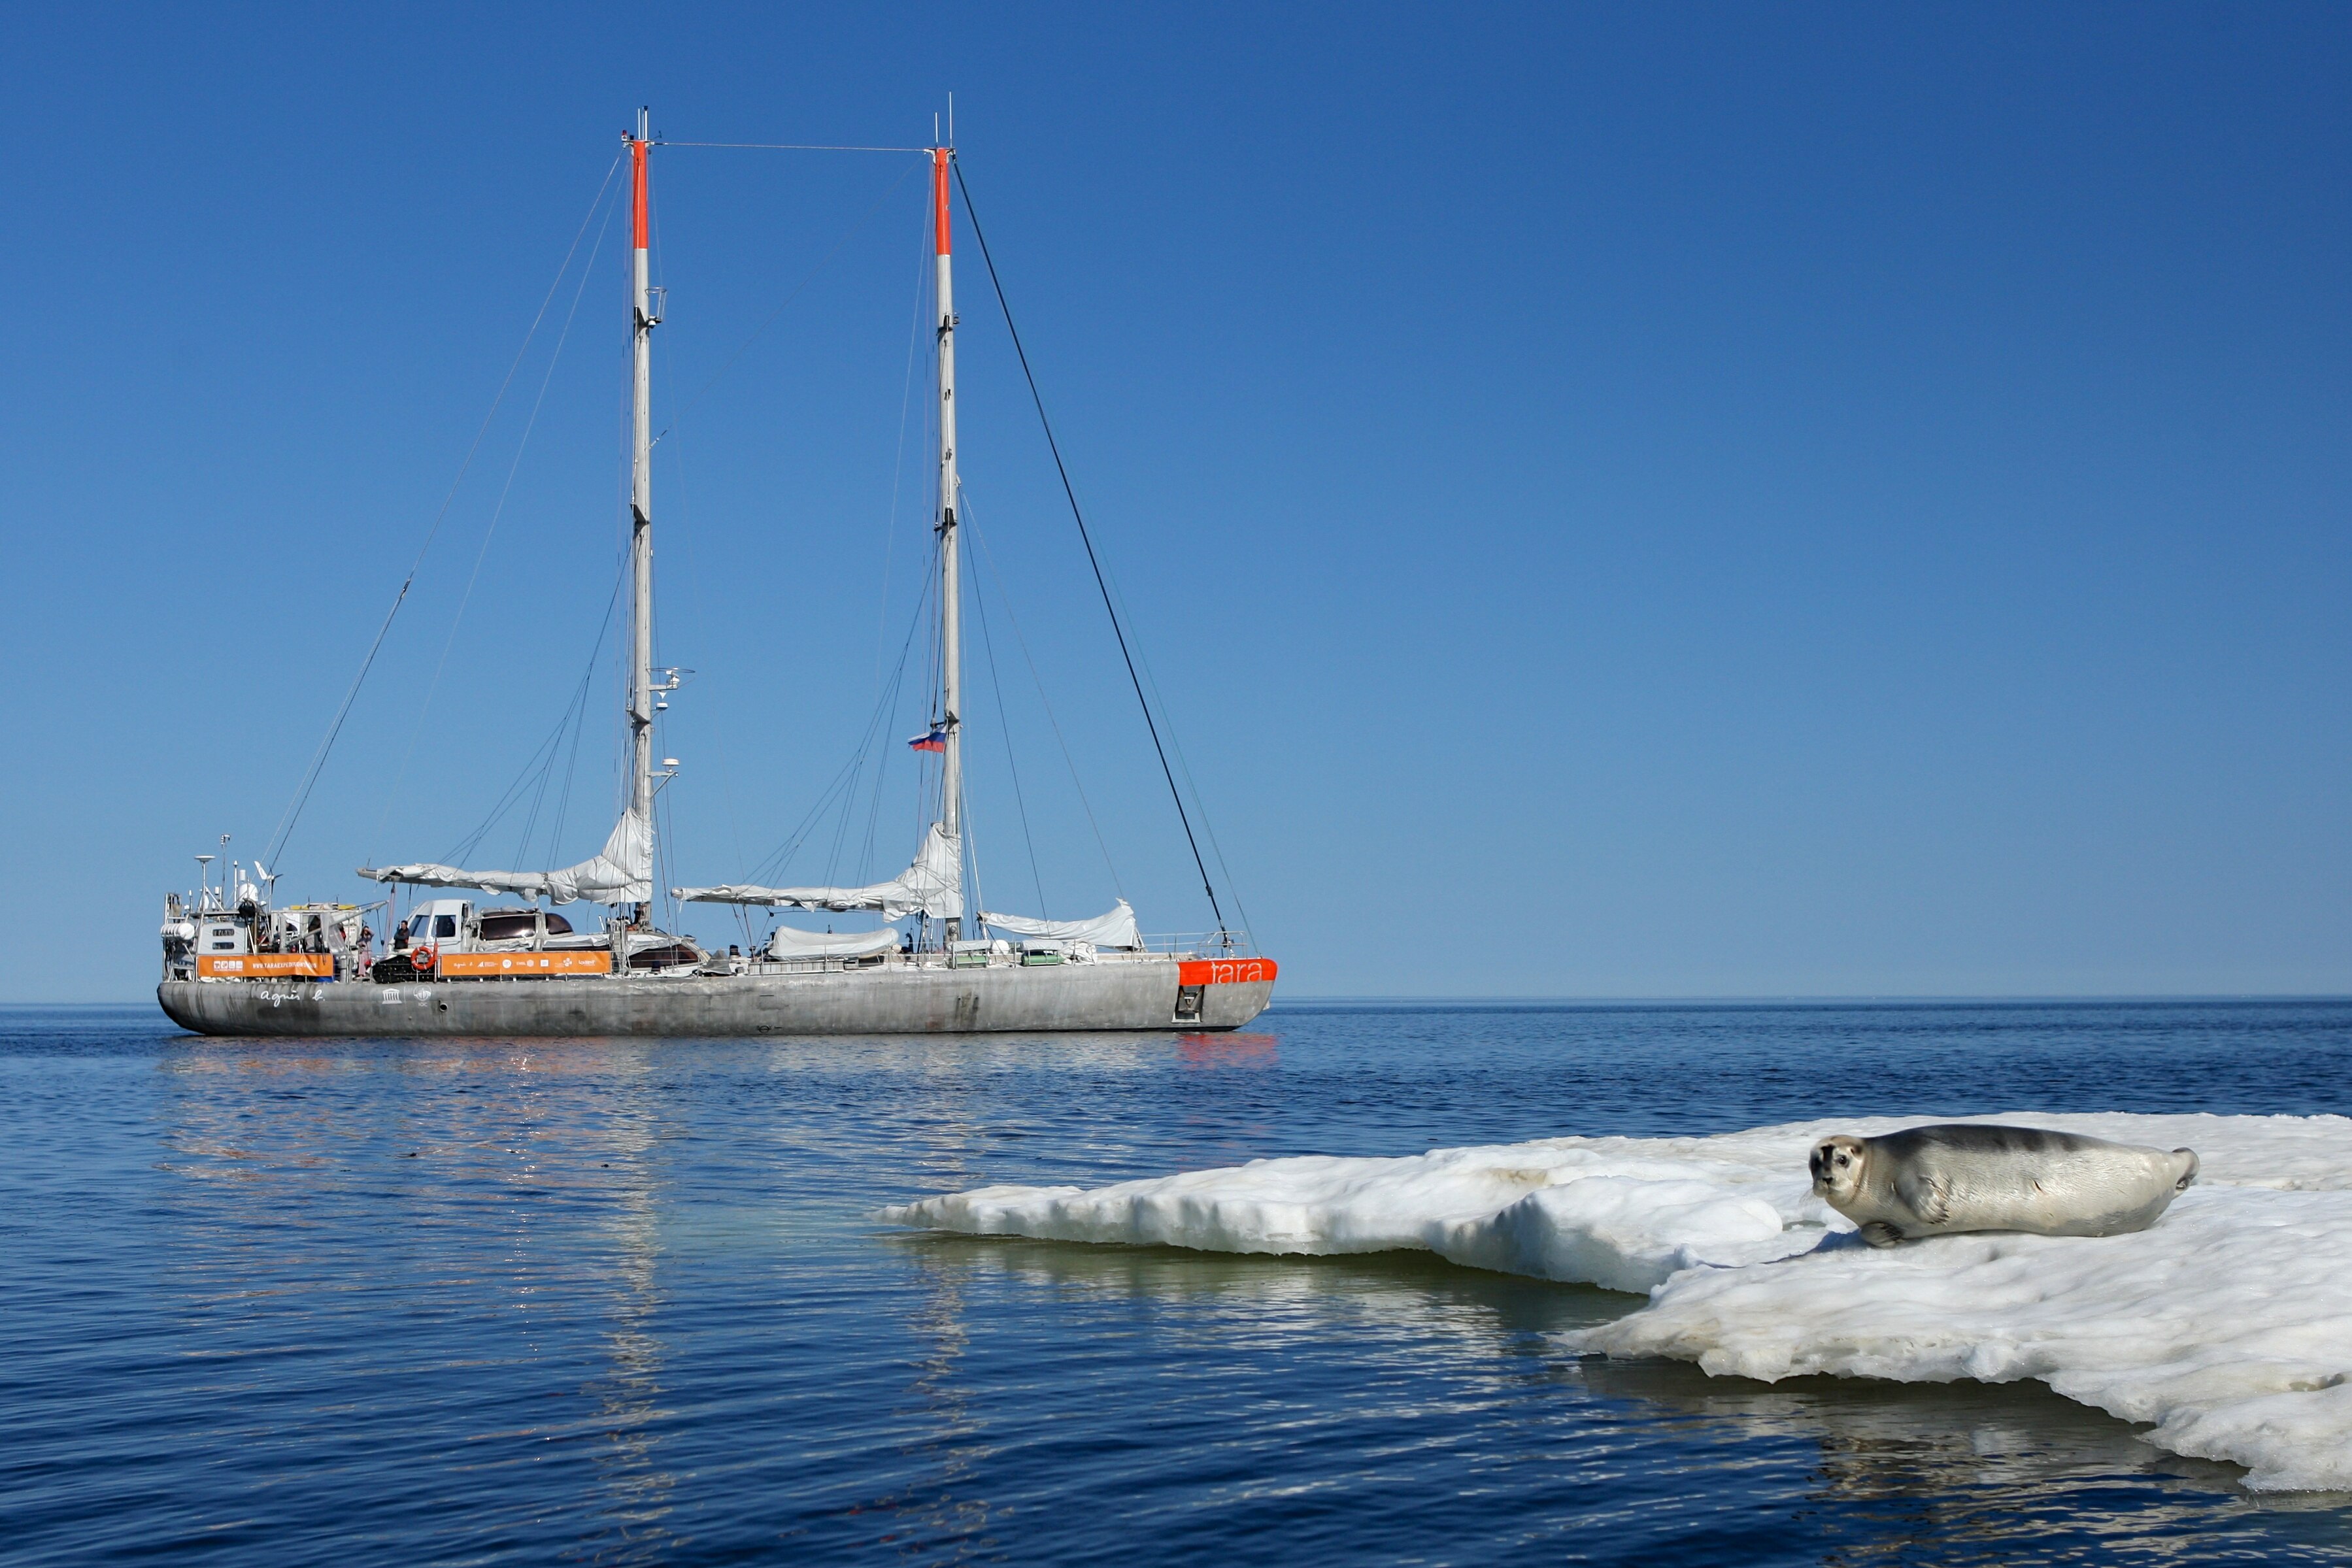 Imagen de Barco de la expedición Tara, que ha estudiado la presencia de plásticos en el Ártico